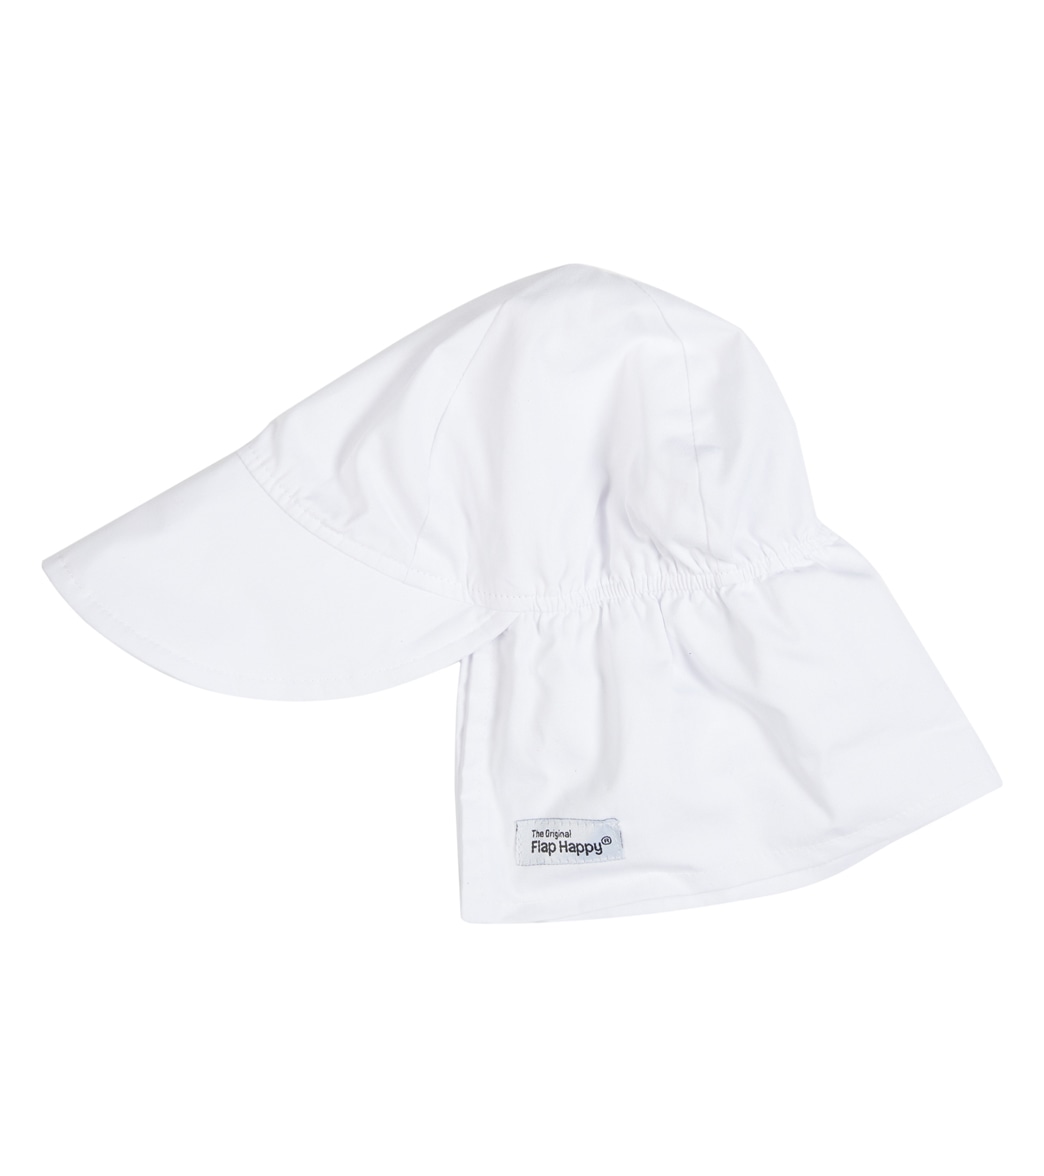 Flap Happy Upf 50+ Original Flap Hat - White Large Cotton - Swimoutlet.com